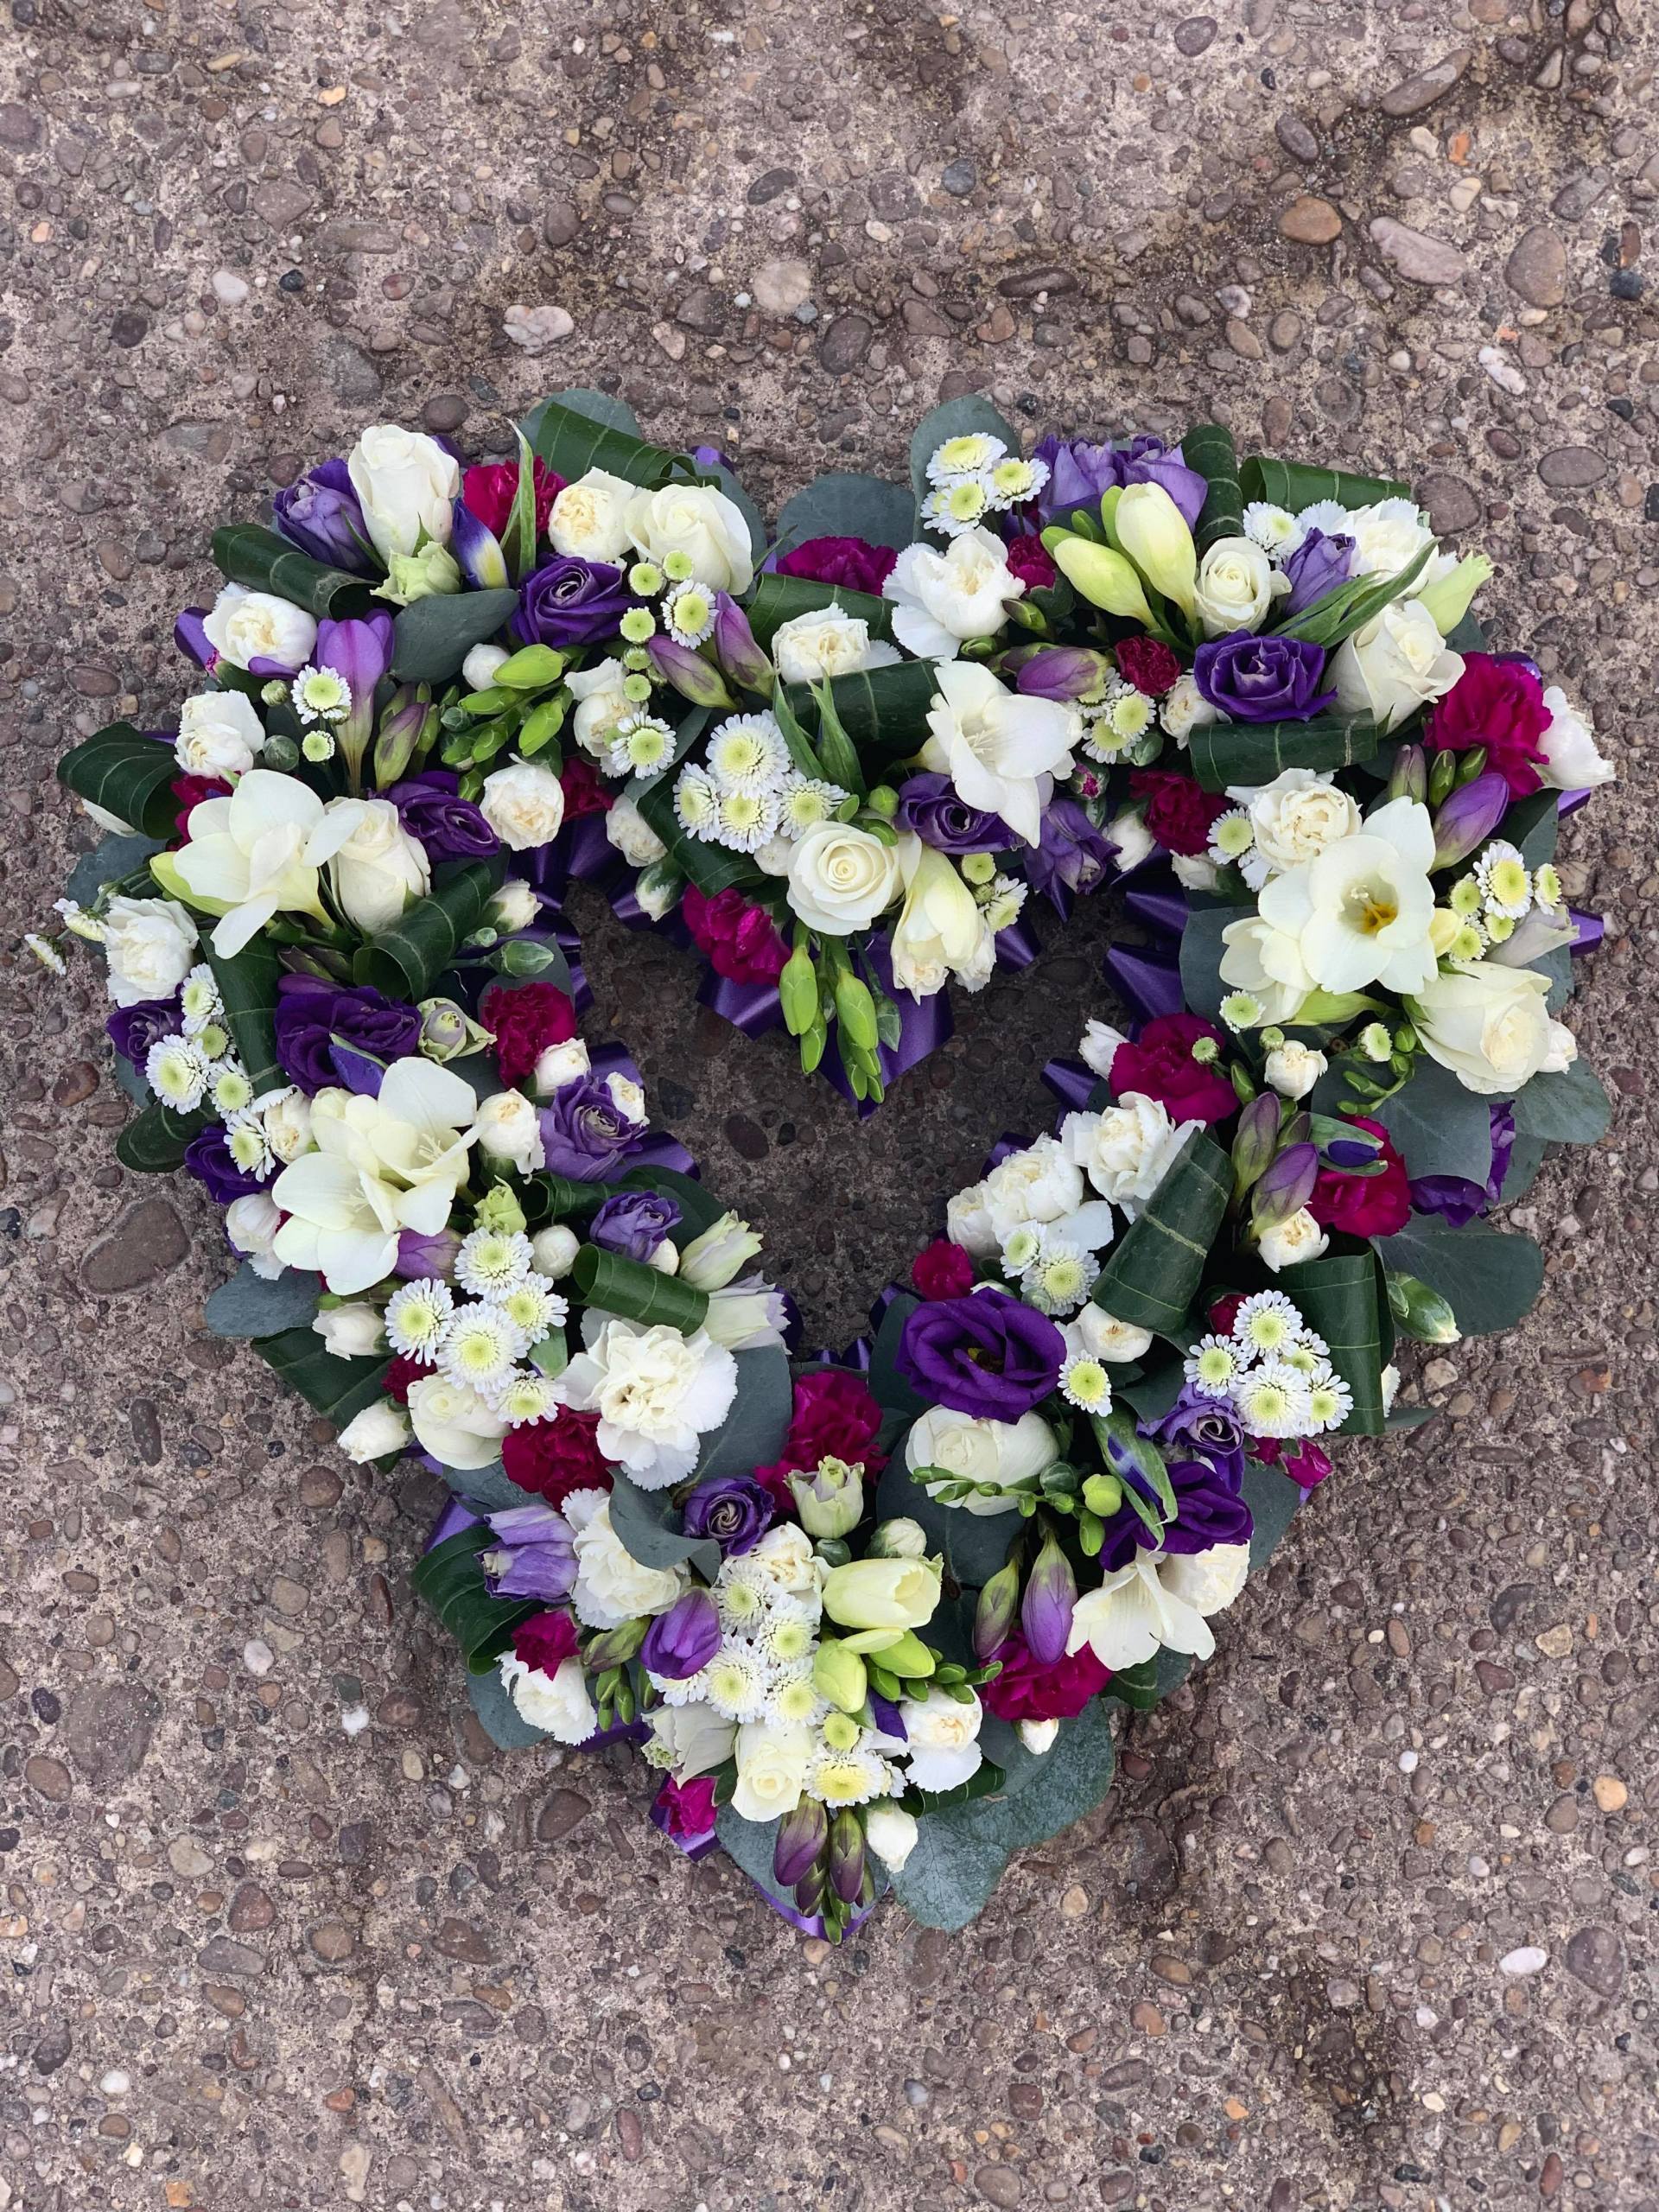 Jo Beth Floral Design Beautiful Bespoke Funeral Flowers Derby